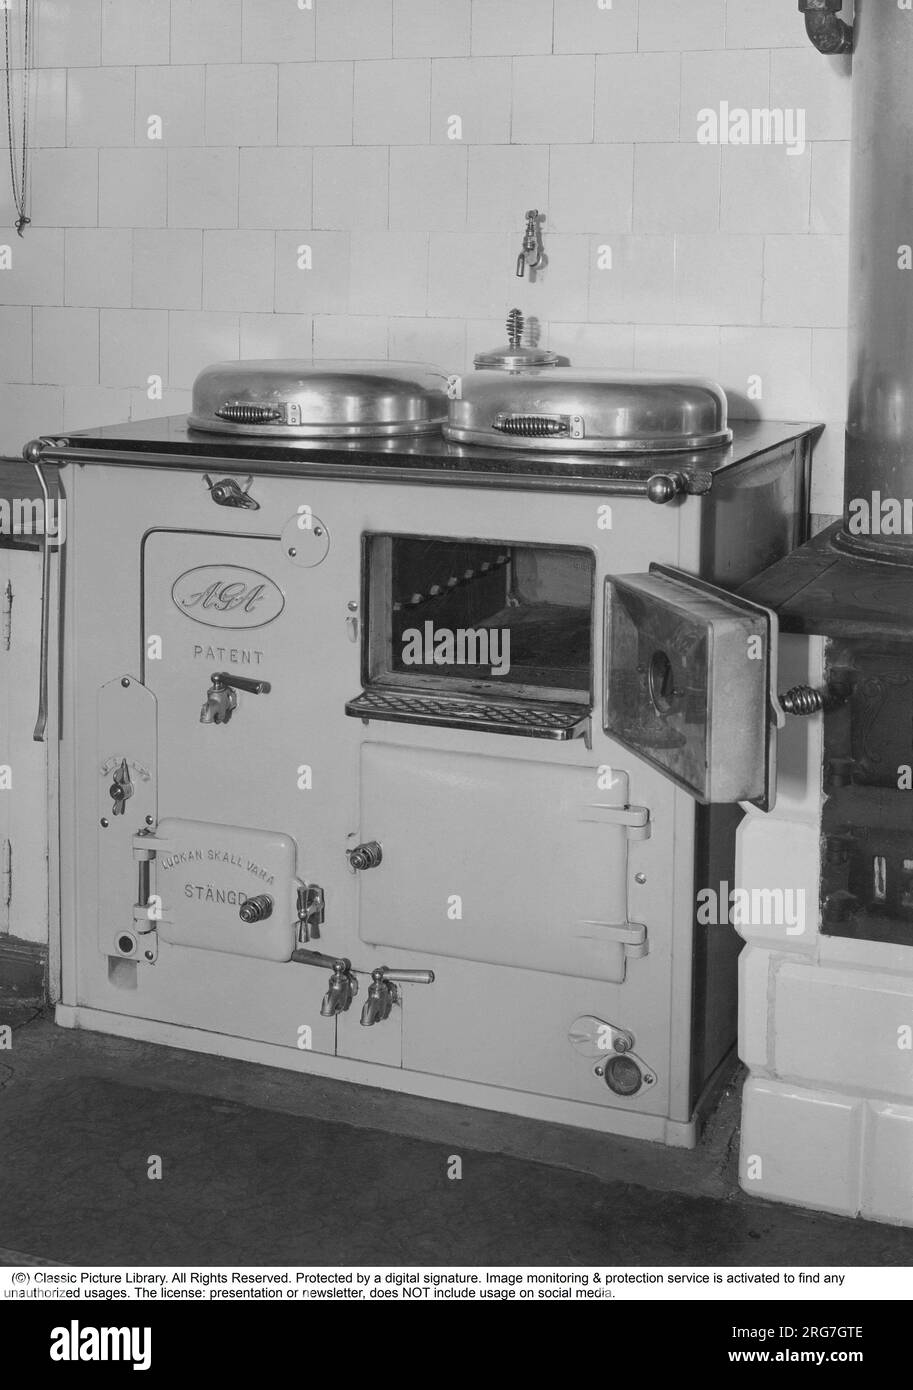 La cuisinière AGA. Une invention suédoise de Gustaf Dalén avec le principe du stockage de chaleur, une combinaison de deux grandes plaques de cuisson et deux fours dans une seule unité, la cuisinière AGA. La plus ancienne cuisinière AGA encore utilisée appartient à la famille Hett du Sussex et elle a été installée en 1932. Cette photo a été prise dans les années 1930 Suède Banque D'Images